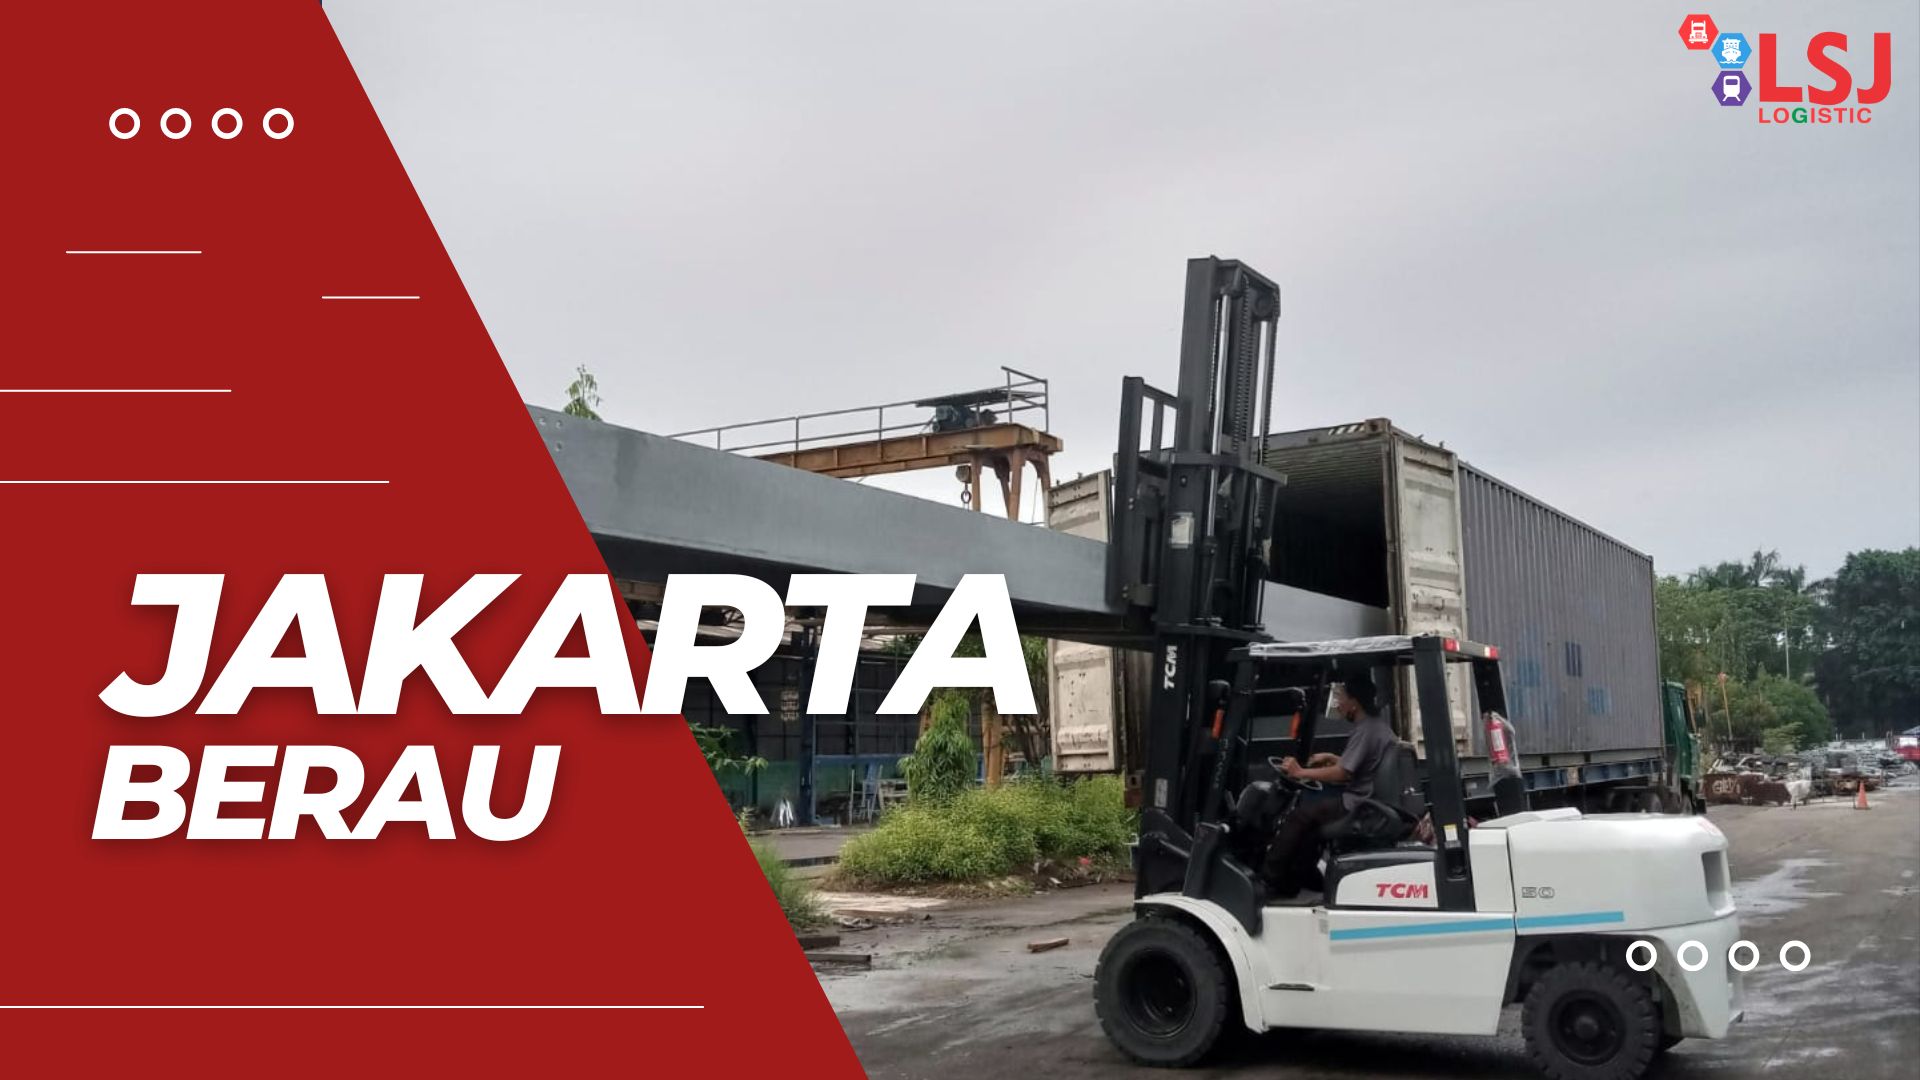 Harga Pengiriman Container Jakarta Berau